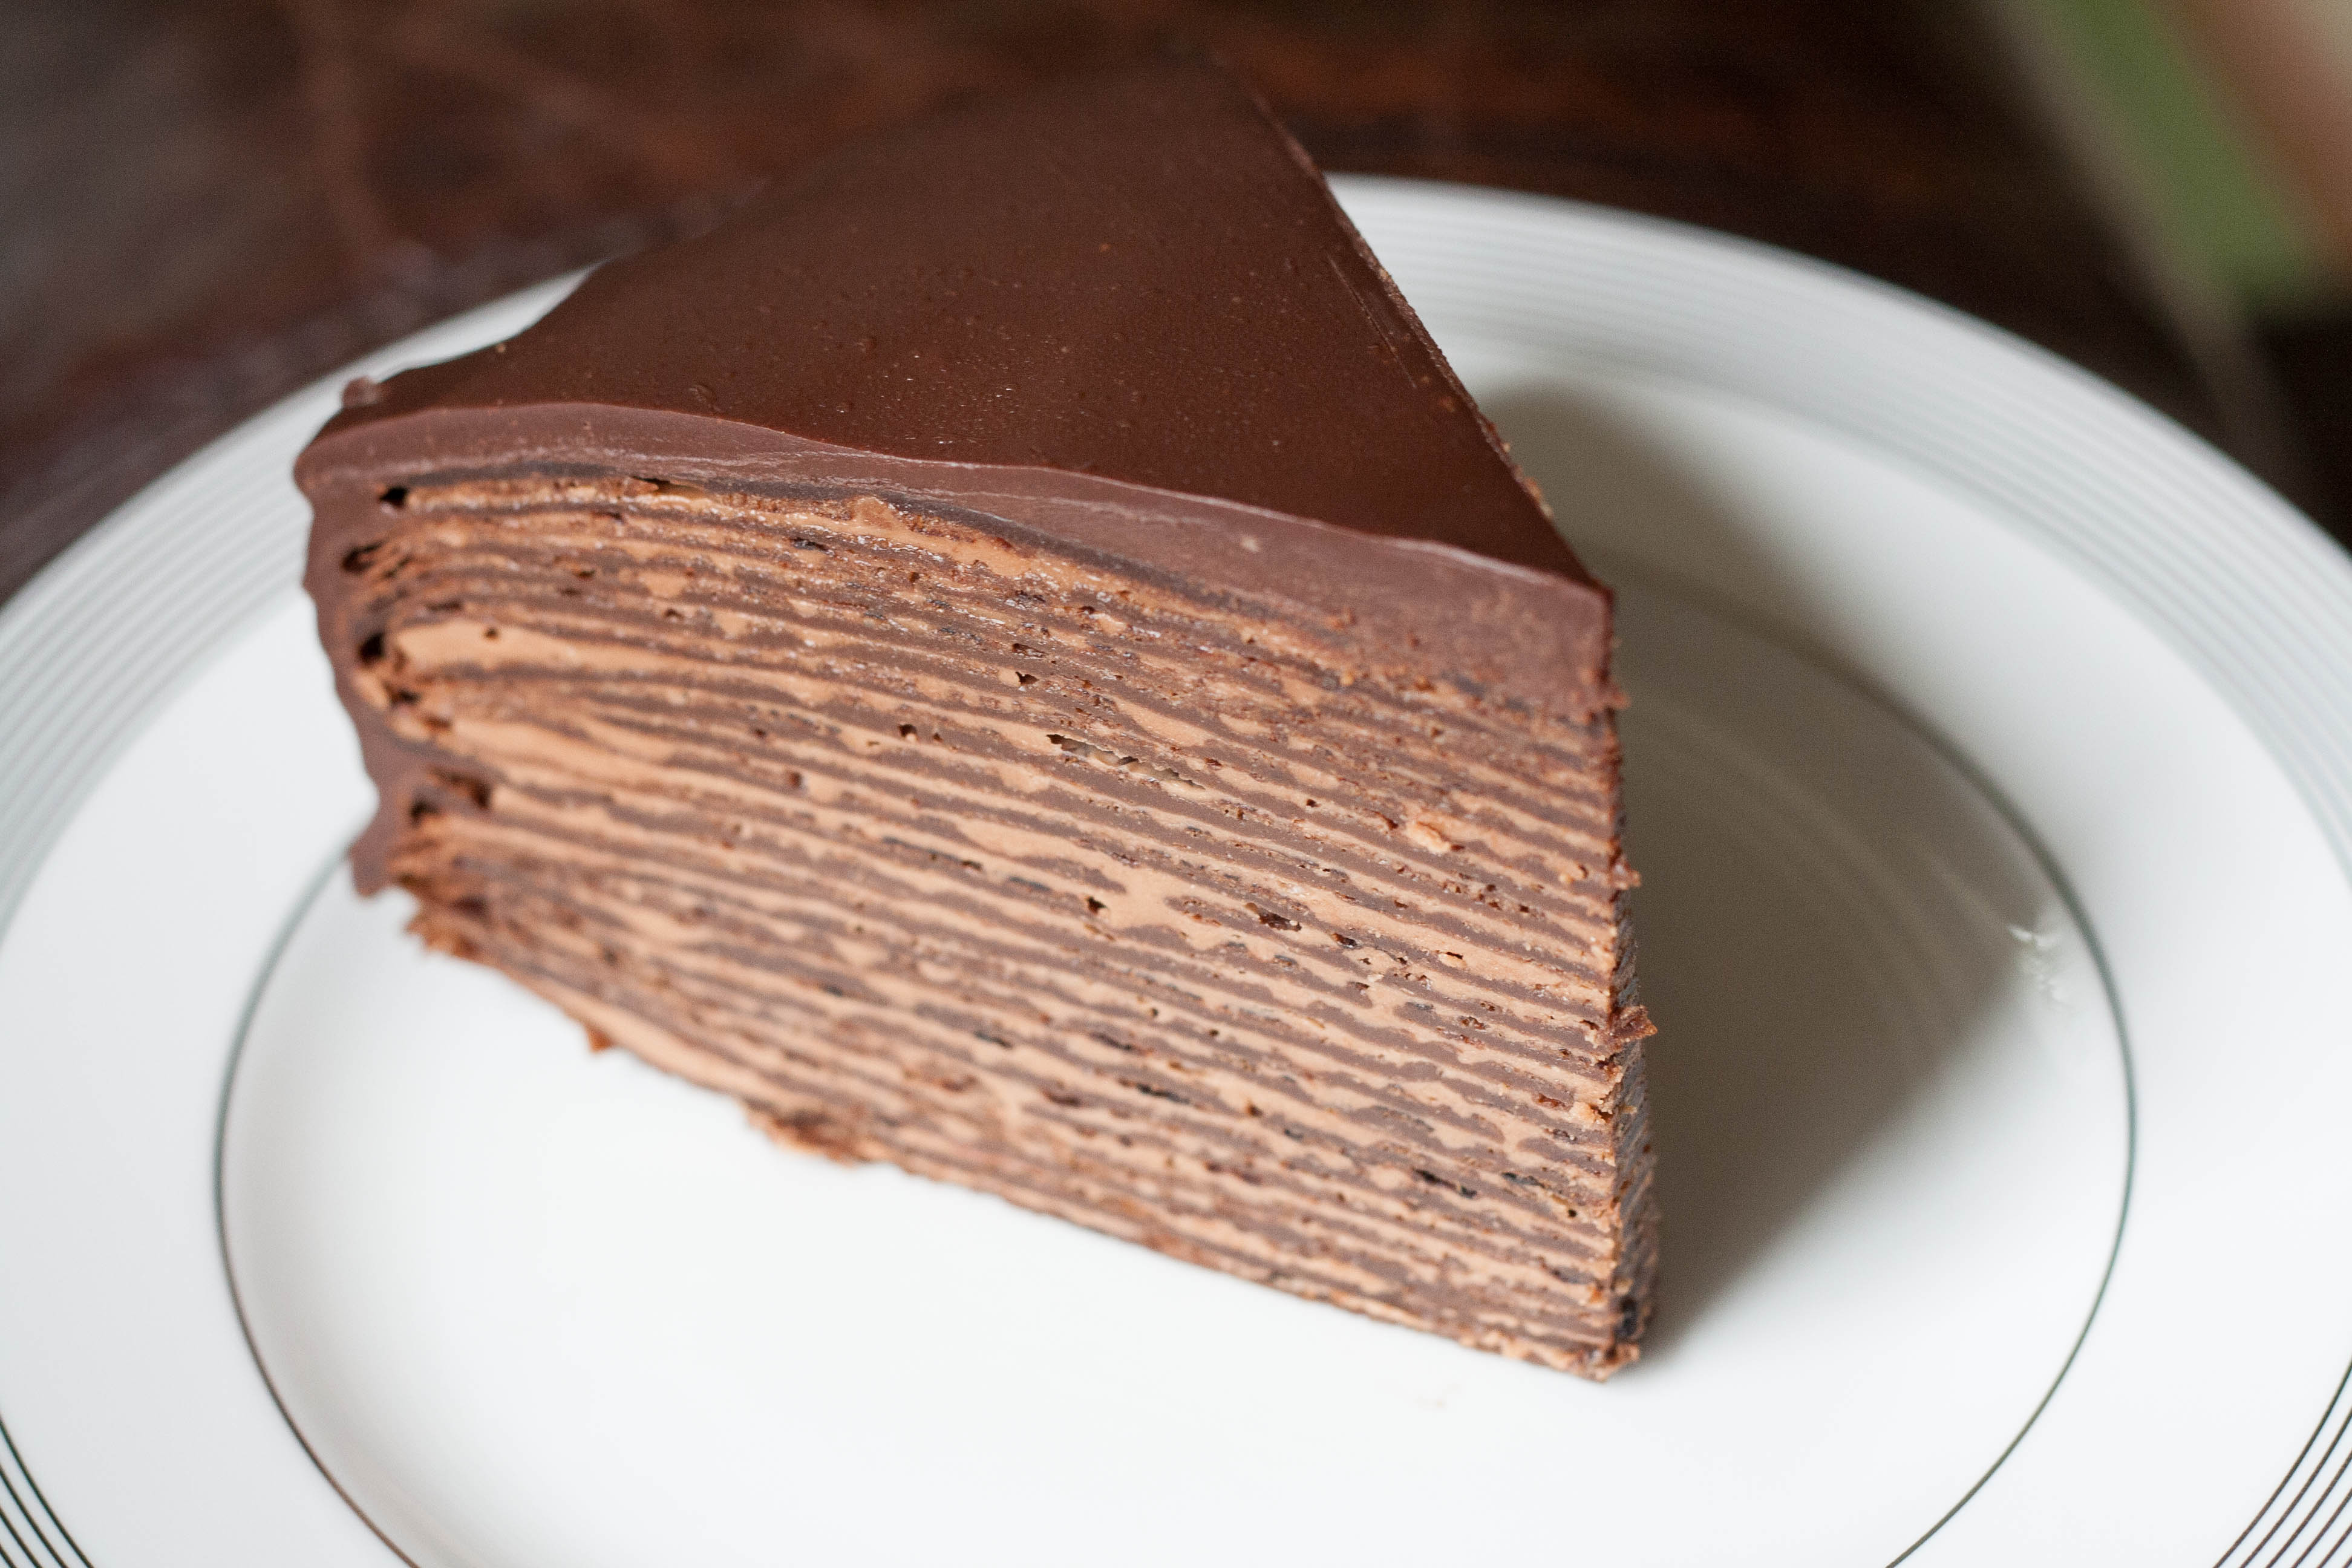 Chocolate Hazelnut Cake Nutella